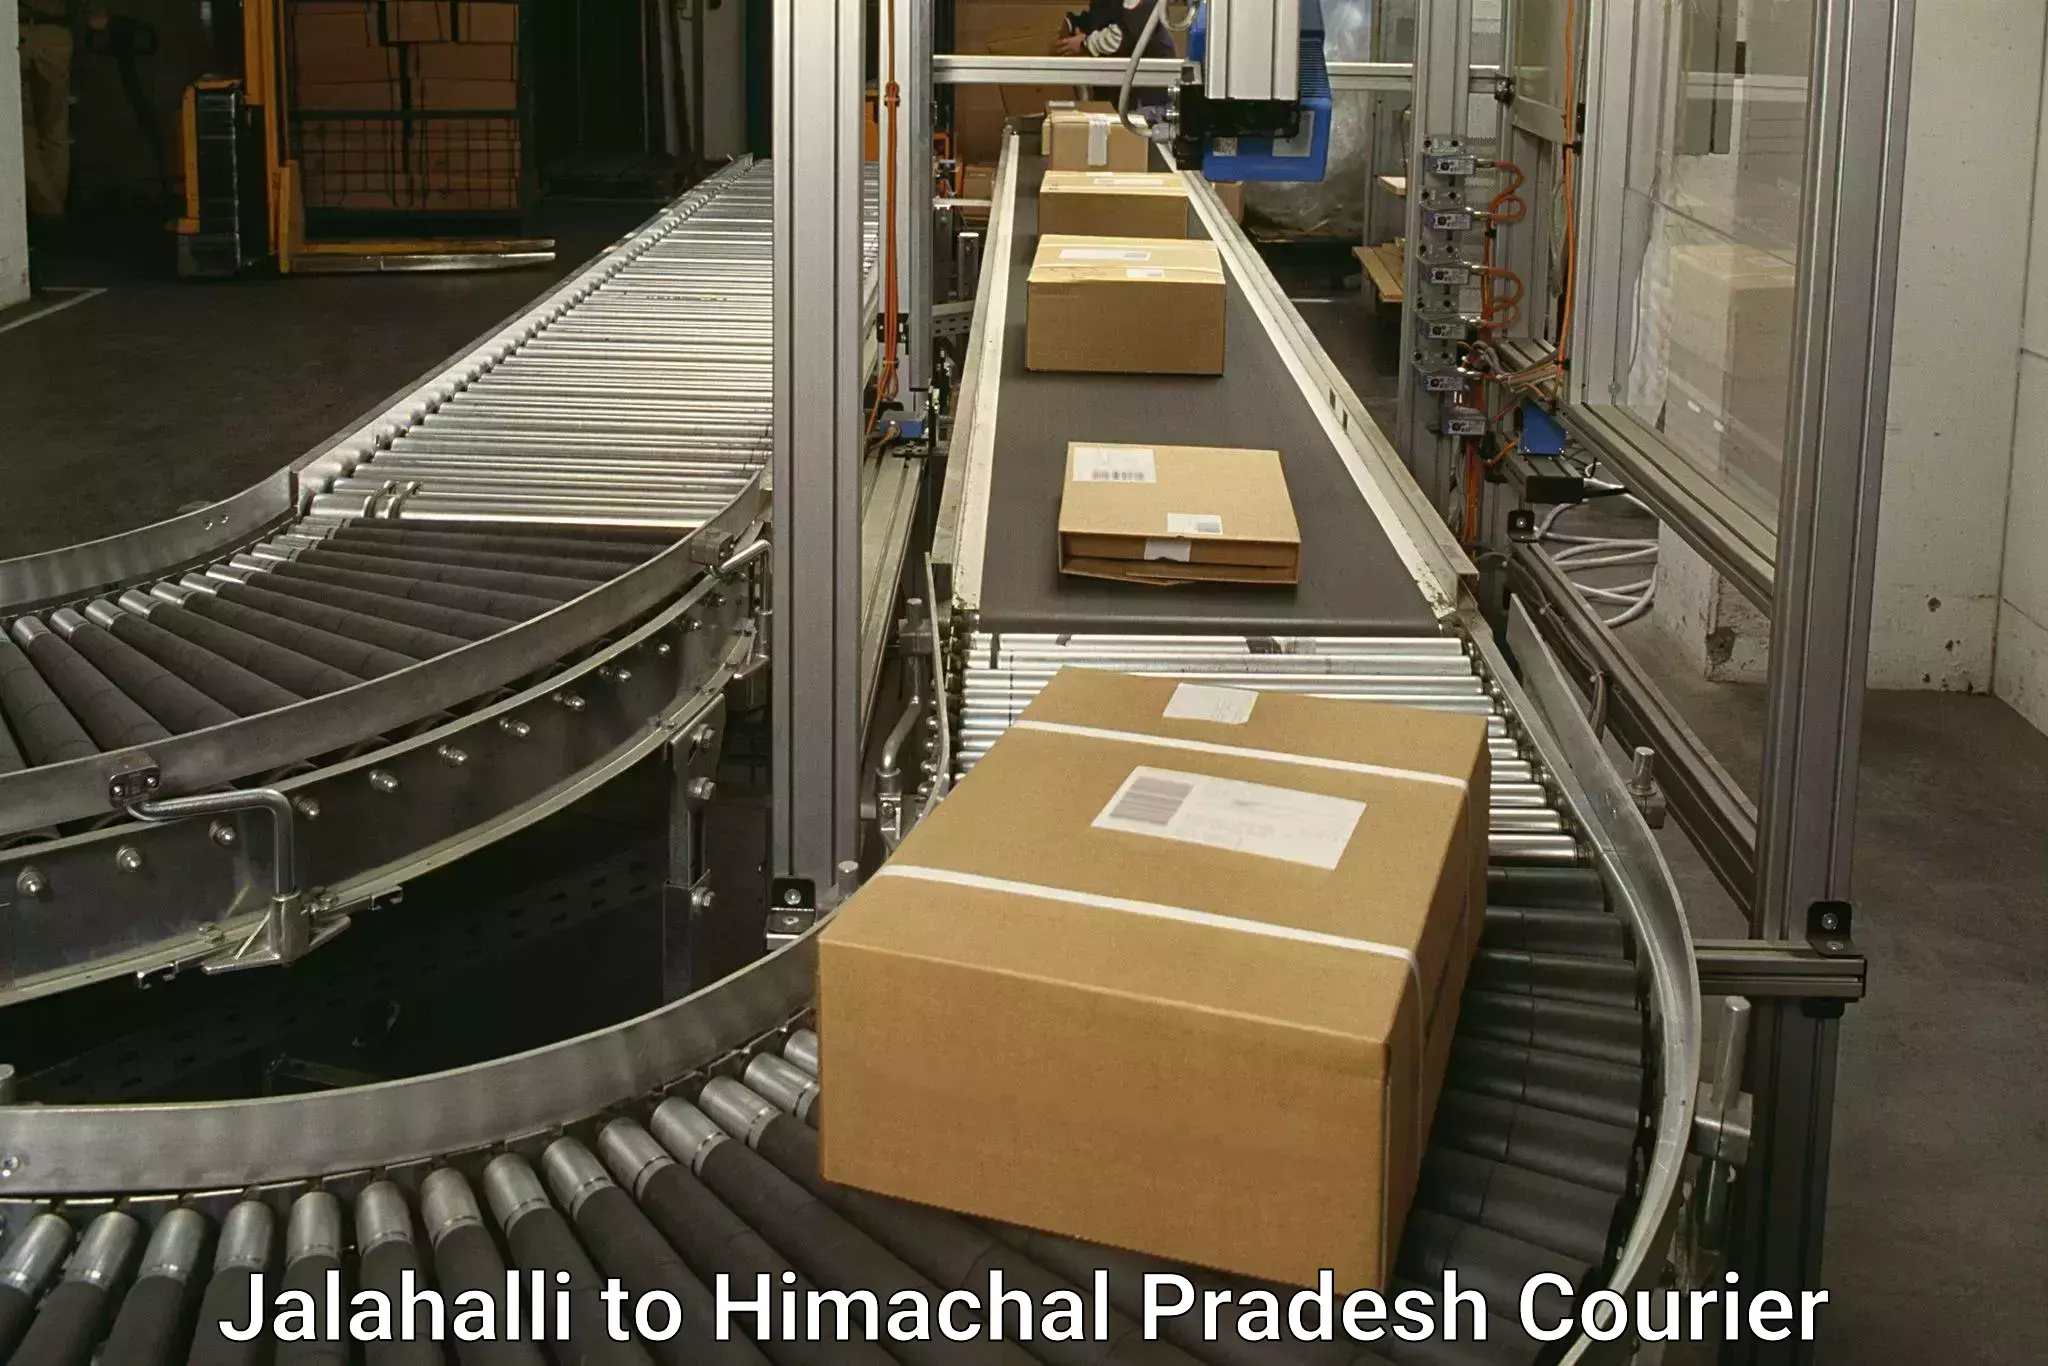 Professional courier handling Jalahalli to Rakkar